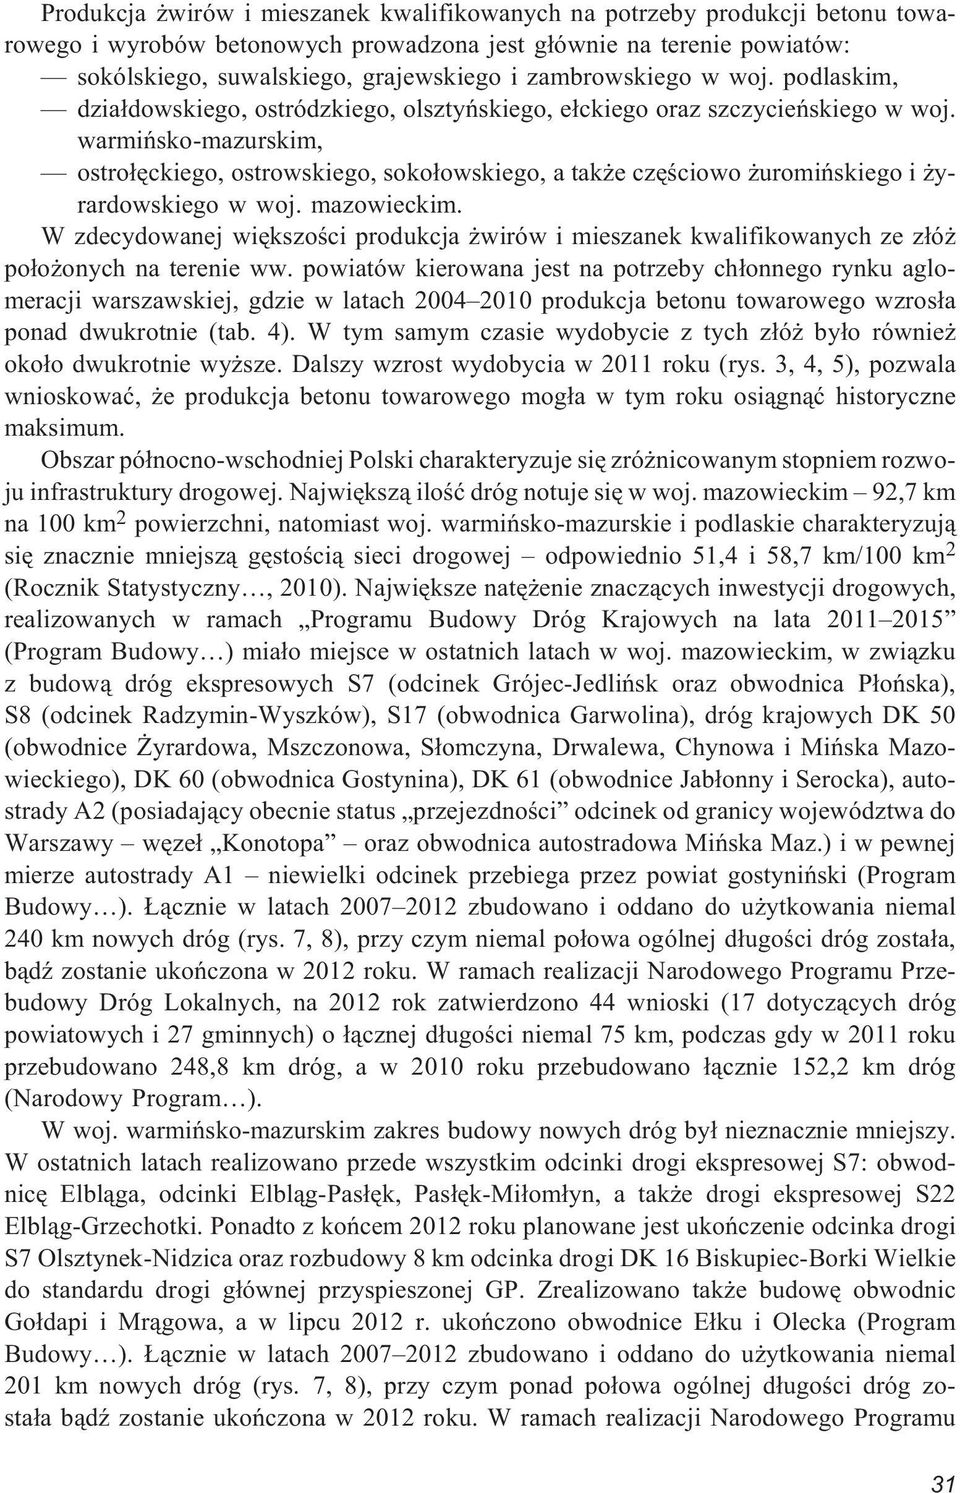 warmiñsko-mazurskim, ostro³êckiego, ostrowskiego, soko³owskiego, a tak e czêœciowo uromiñskiego i yrardowskiego w woj. mazowieckim.